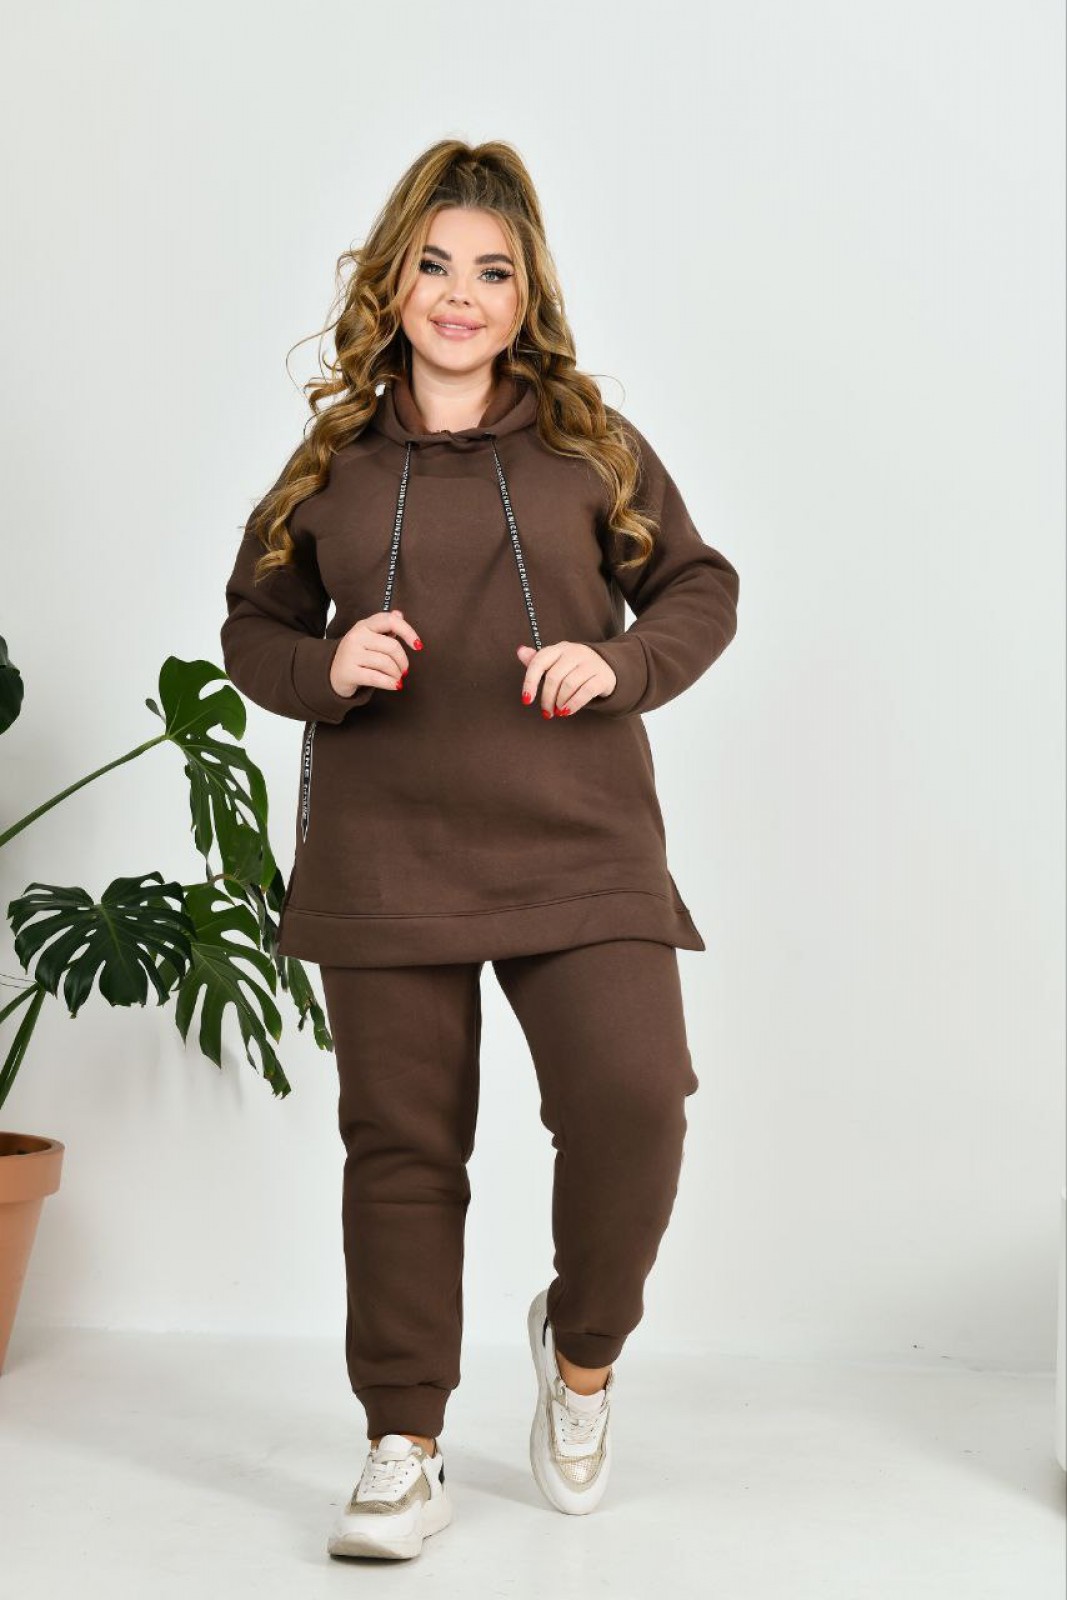 Жіночий теплий прогулянковий костюм коричневого кольору р.54 383691